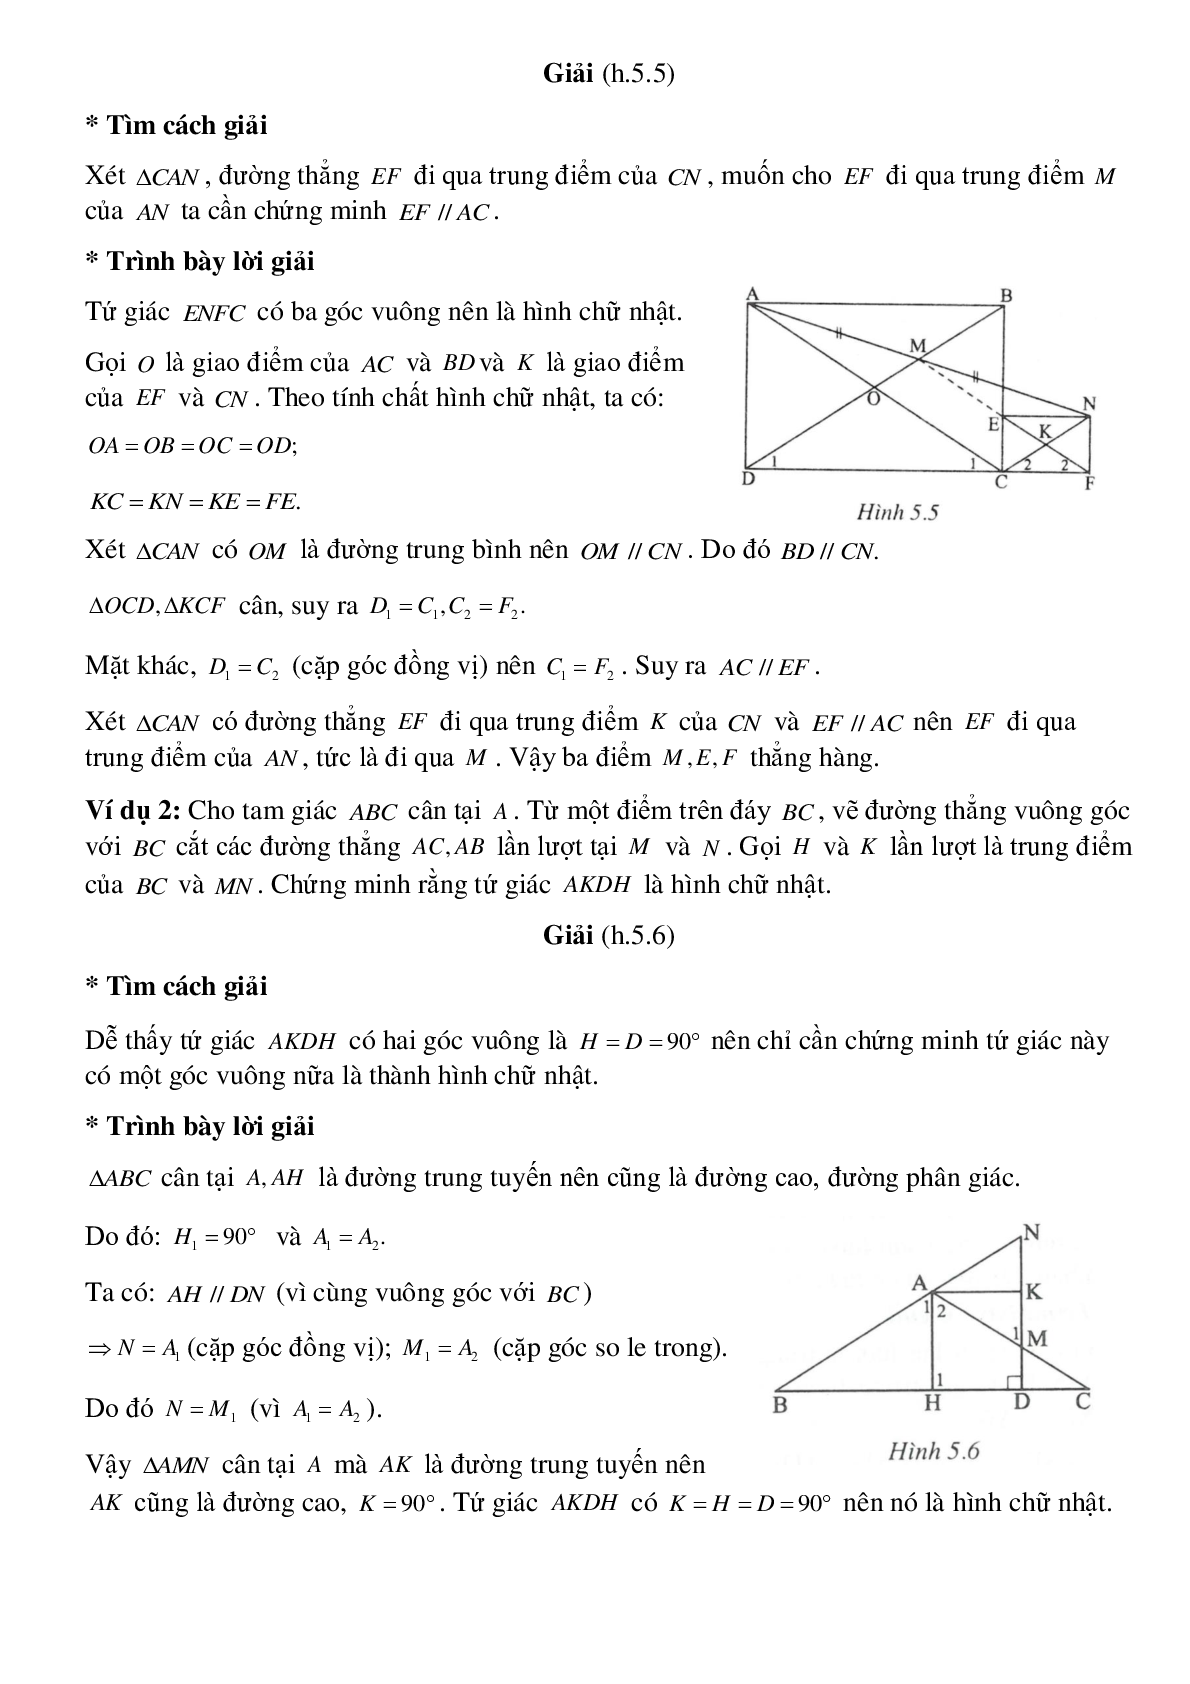 Hình chữ nhật, tính chất của các điểm cách đều một đường thẳng cho trước (trang 2)